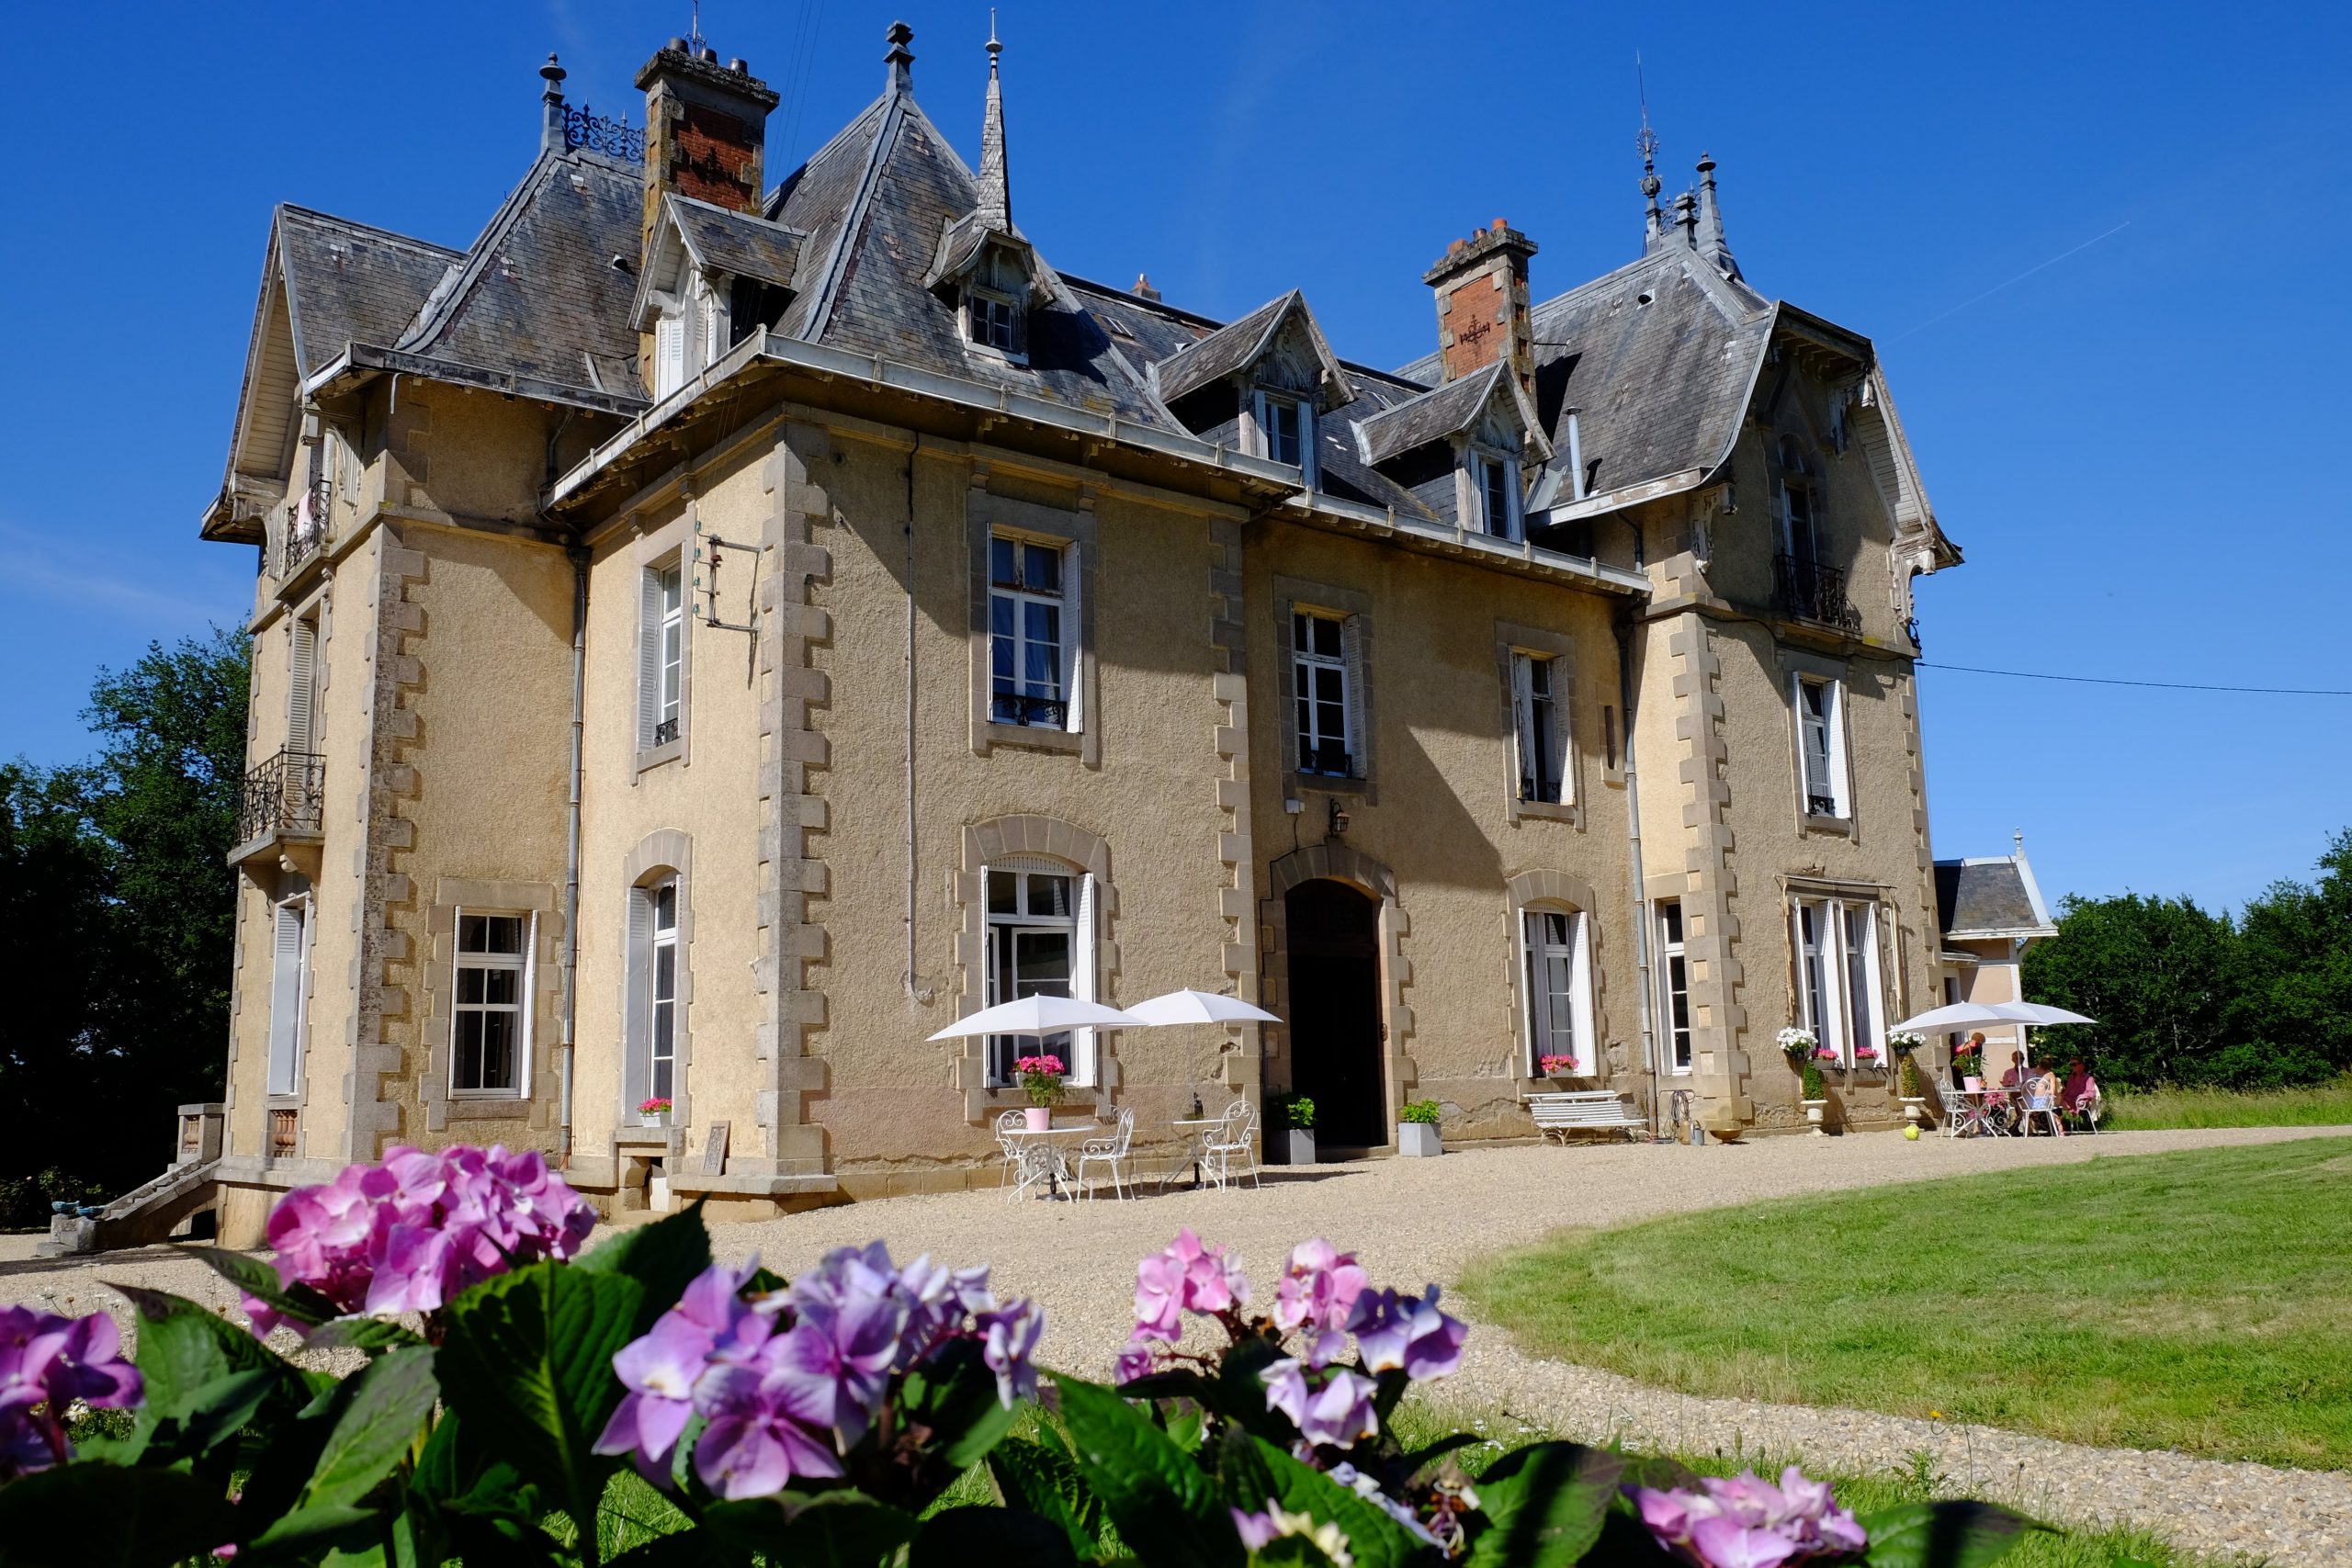 VERKOCHT: Chauteau Marillaux / Chateau Meiland te koop (Unieke B&B-kans in Frankrijk)